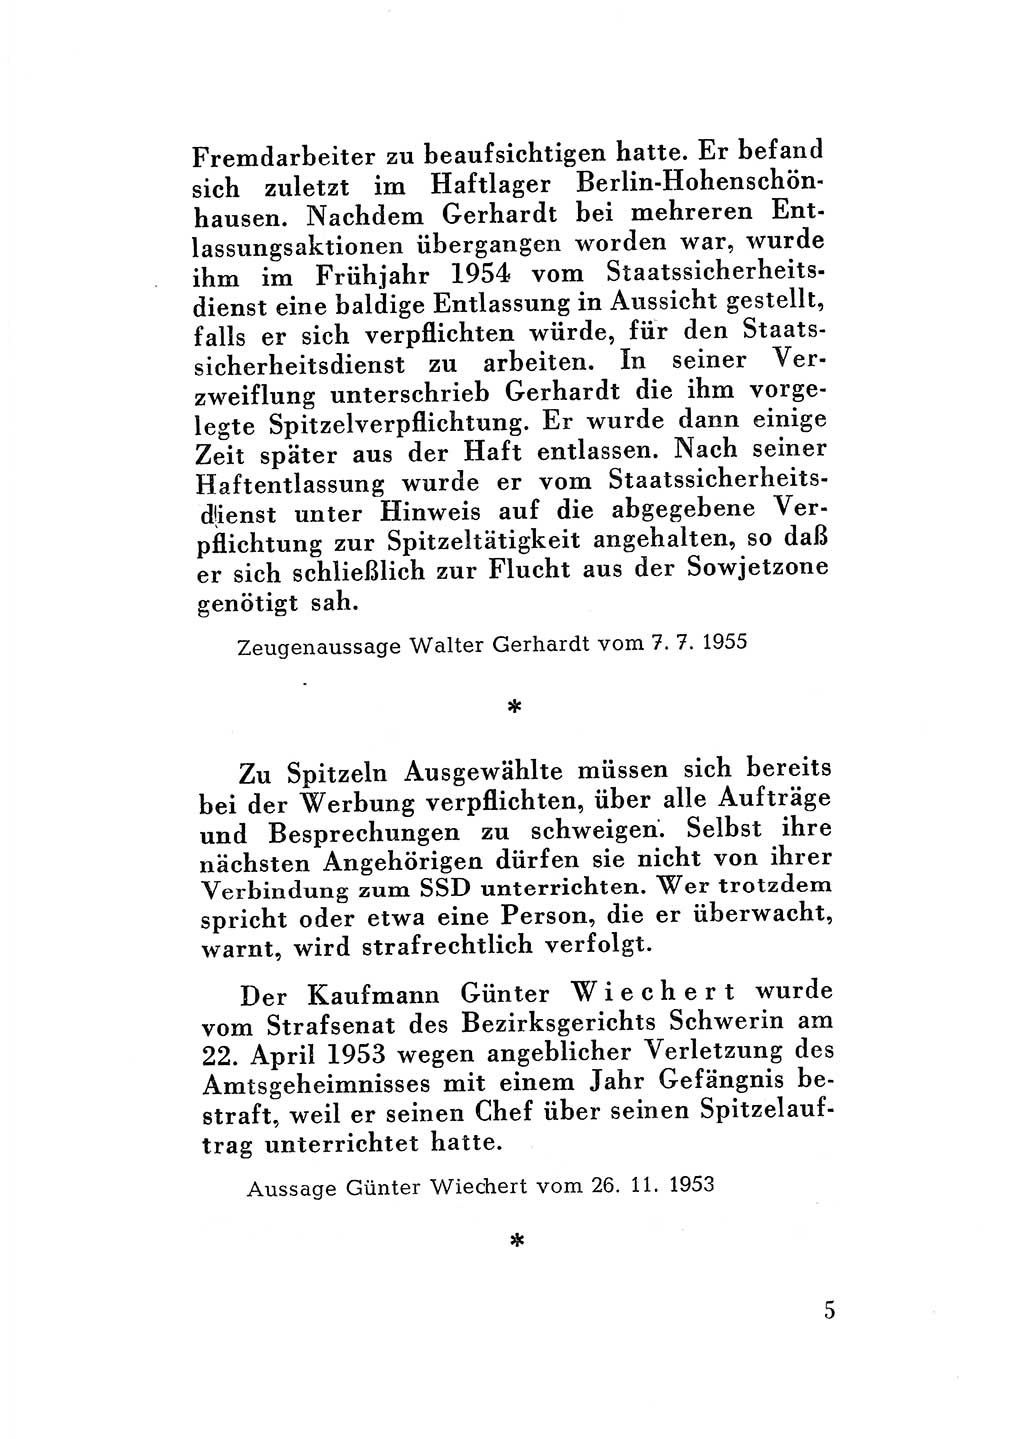 Katalog des Unrechts, Untersuchungsausschuß Freiheitlicher Juristen (UfJ) [Bundesrepublik Deutschland (BRD)] 1956, Seite 5 (Kat. UnR. UfJ BRD 1956, S. 5)